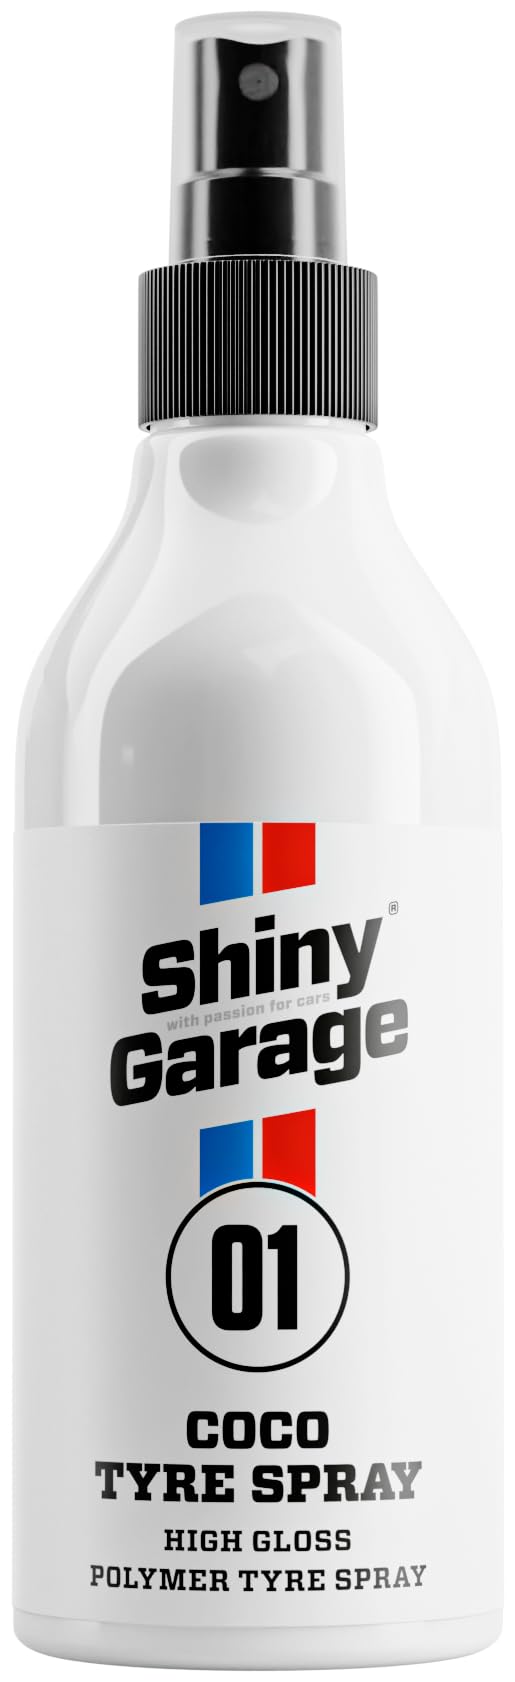 Shiny Garage Felgenreiniger “Coco Tire Booster” 250 ml - Sprühflasche Reifenglanzspray Für Felgenpflege - Felgen Reinigung - Reifenpflege von Shiny Garage with passion for cars